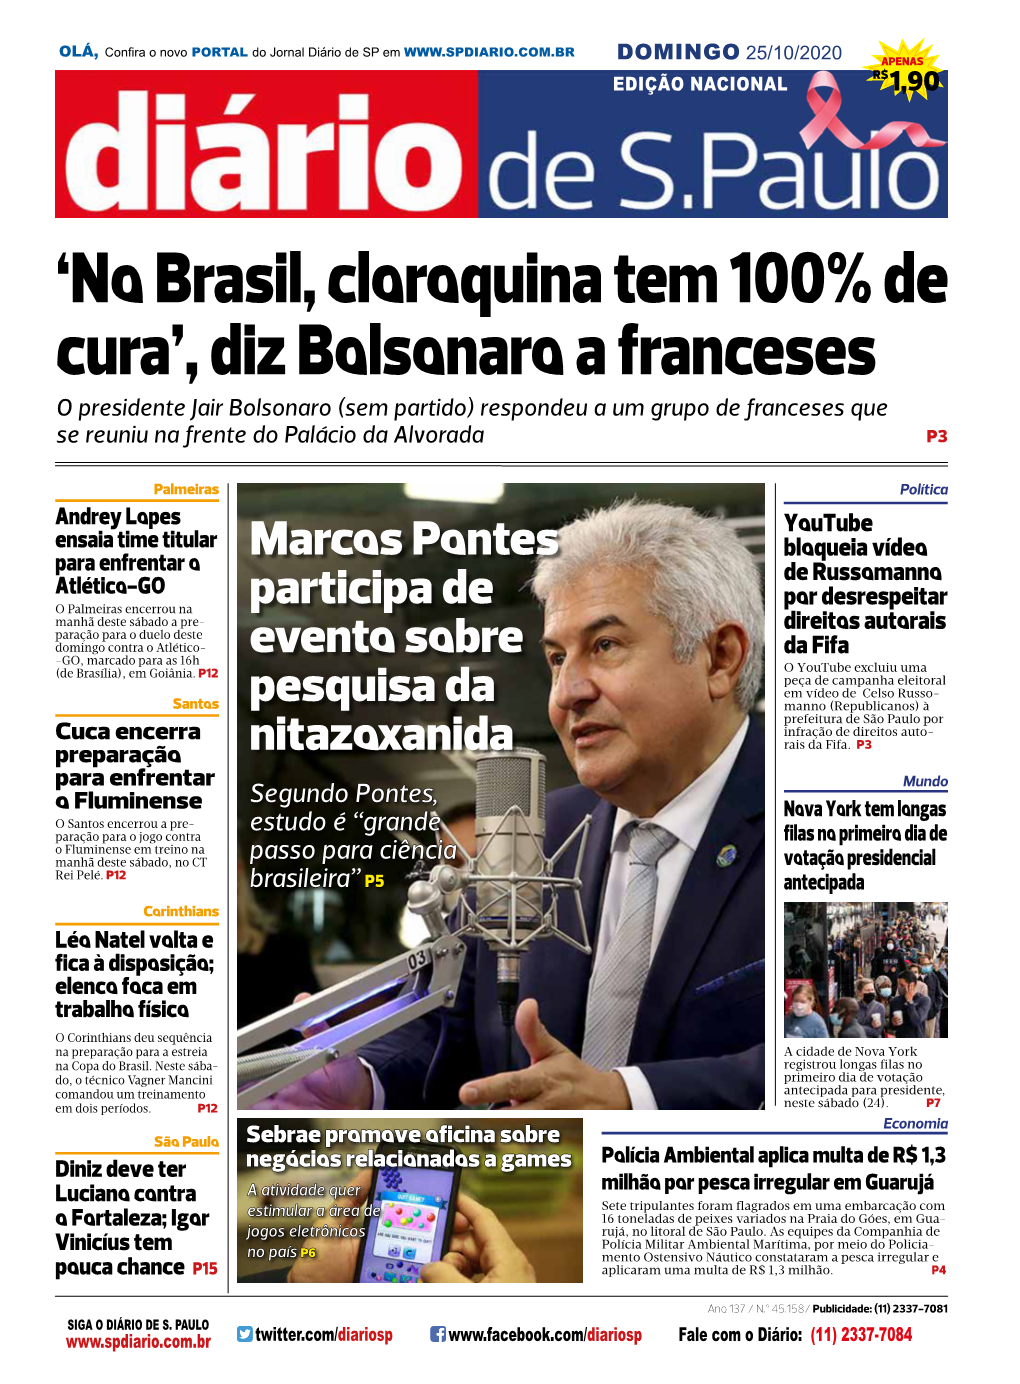 'No Brasil, Cloroquina Tem 100% De Cura', Diz Bolsonaro a Franceses